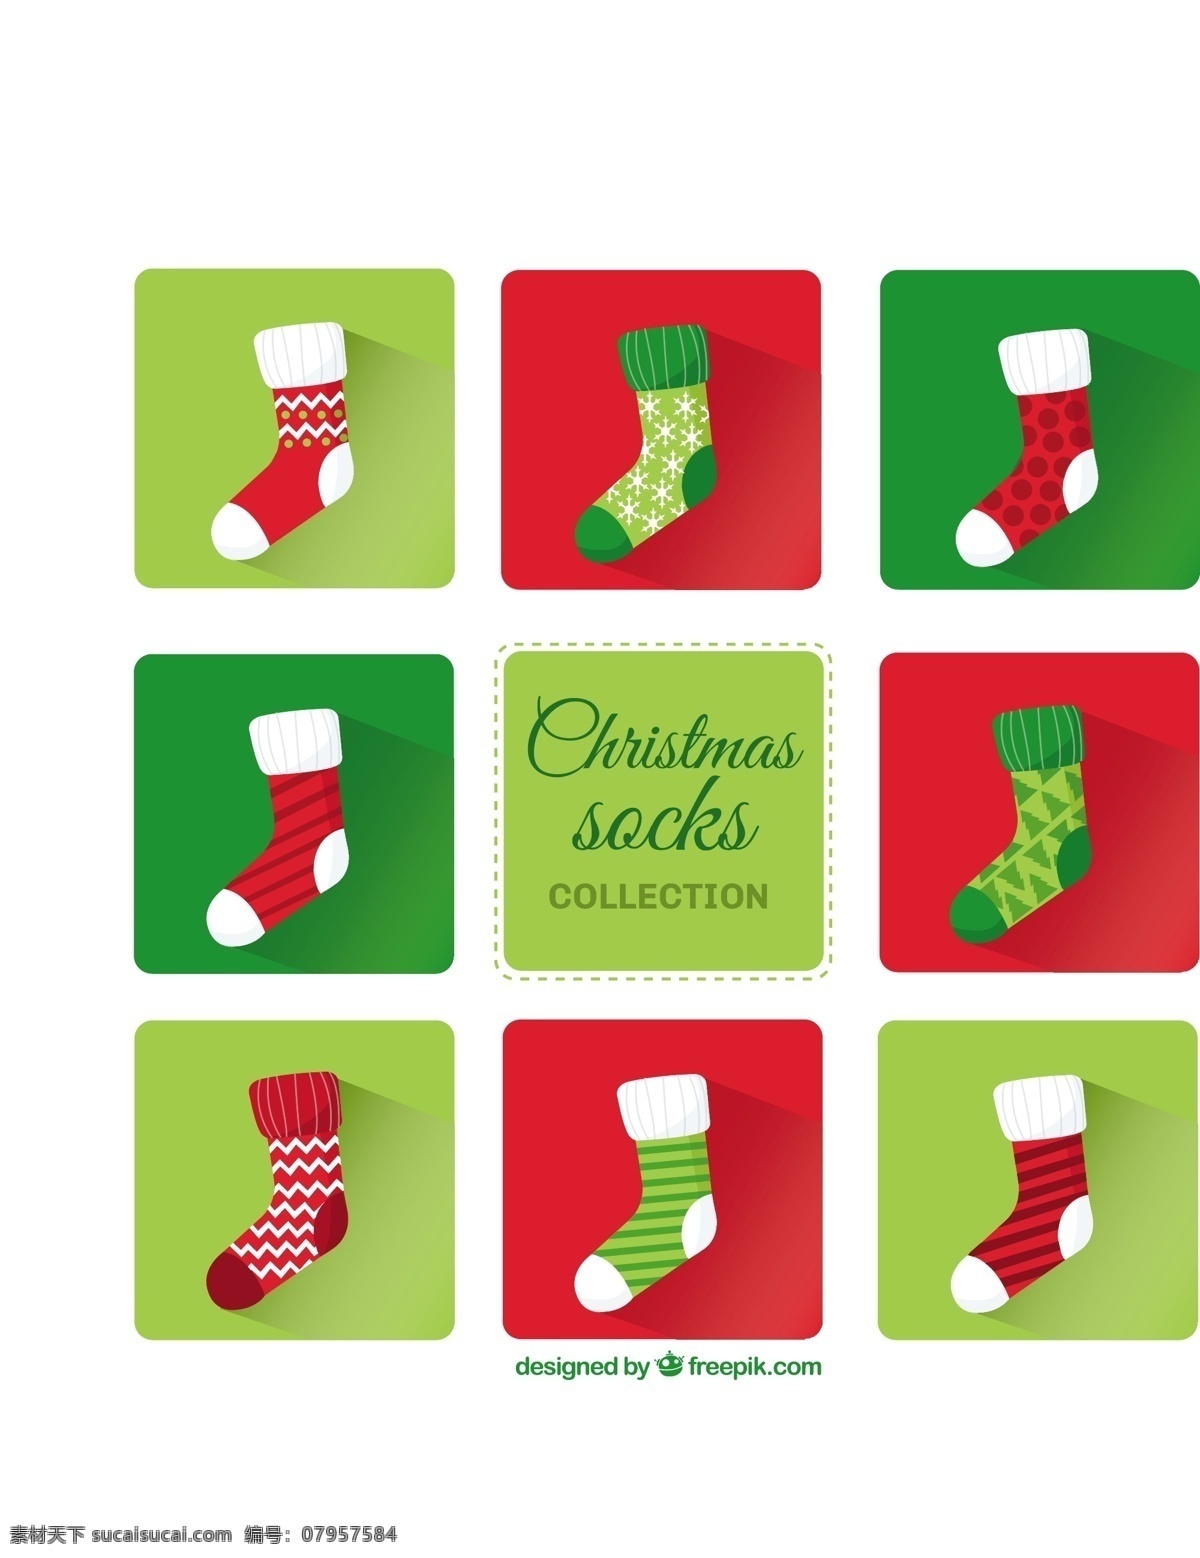 圣诞袜的收集 圣诞节 绿色 圣诞快乐 冬天快乐 红色 庆祝节日 节日快乐 衣服 袜子 棉花 羊毛 季节 季节的问候 节日 快乐 祝福 十二月 白色